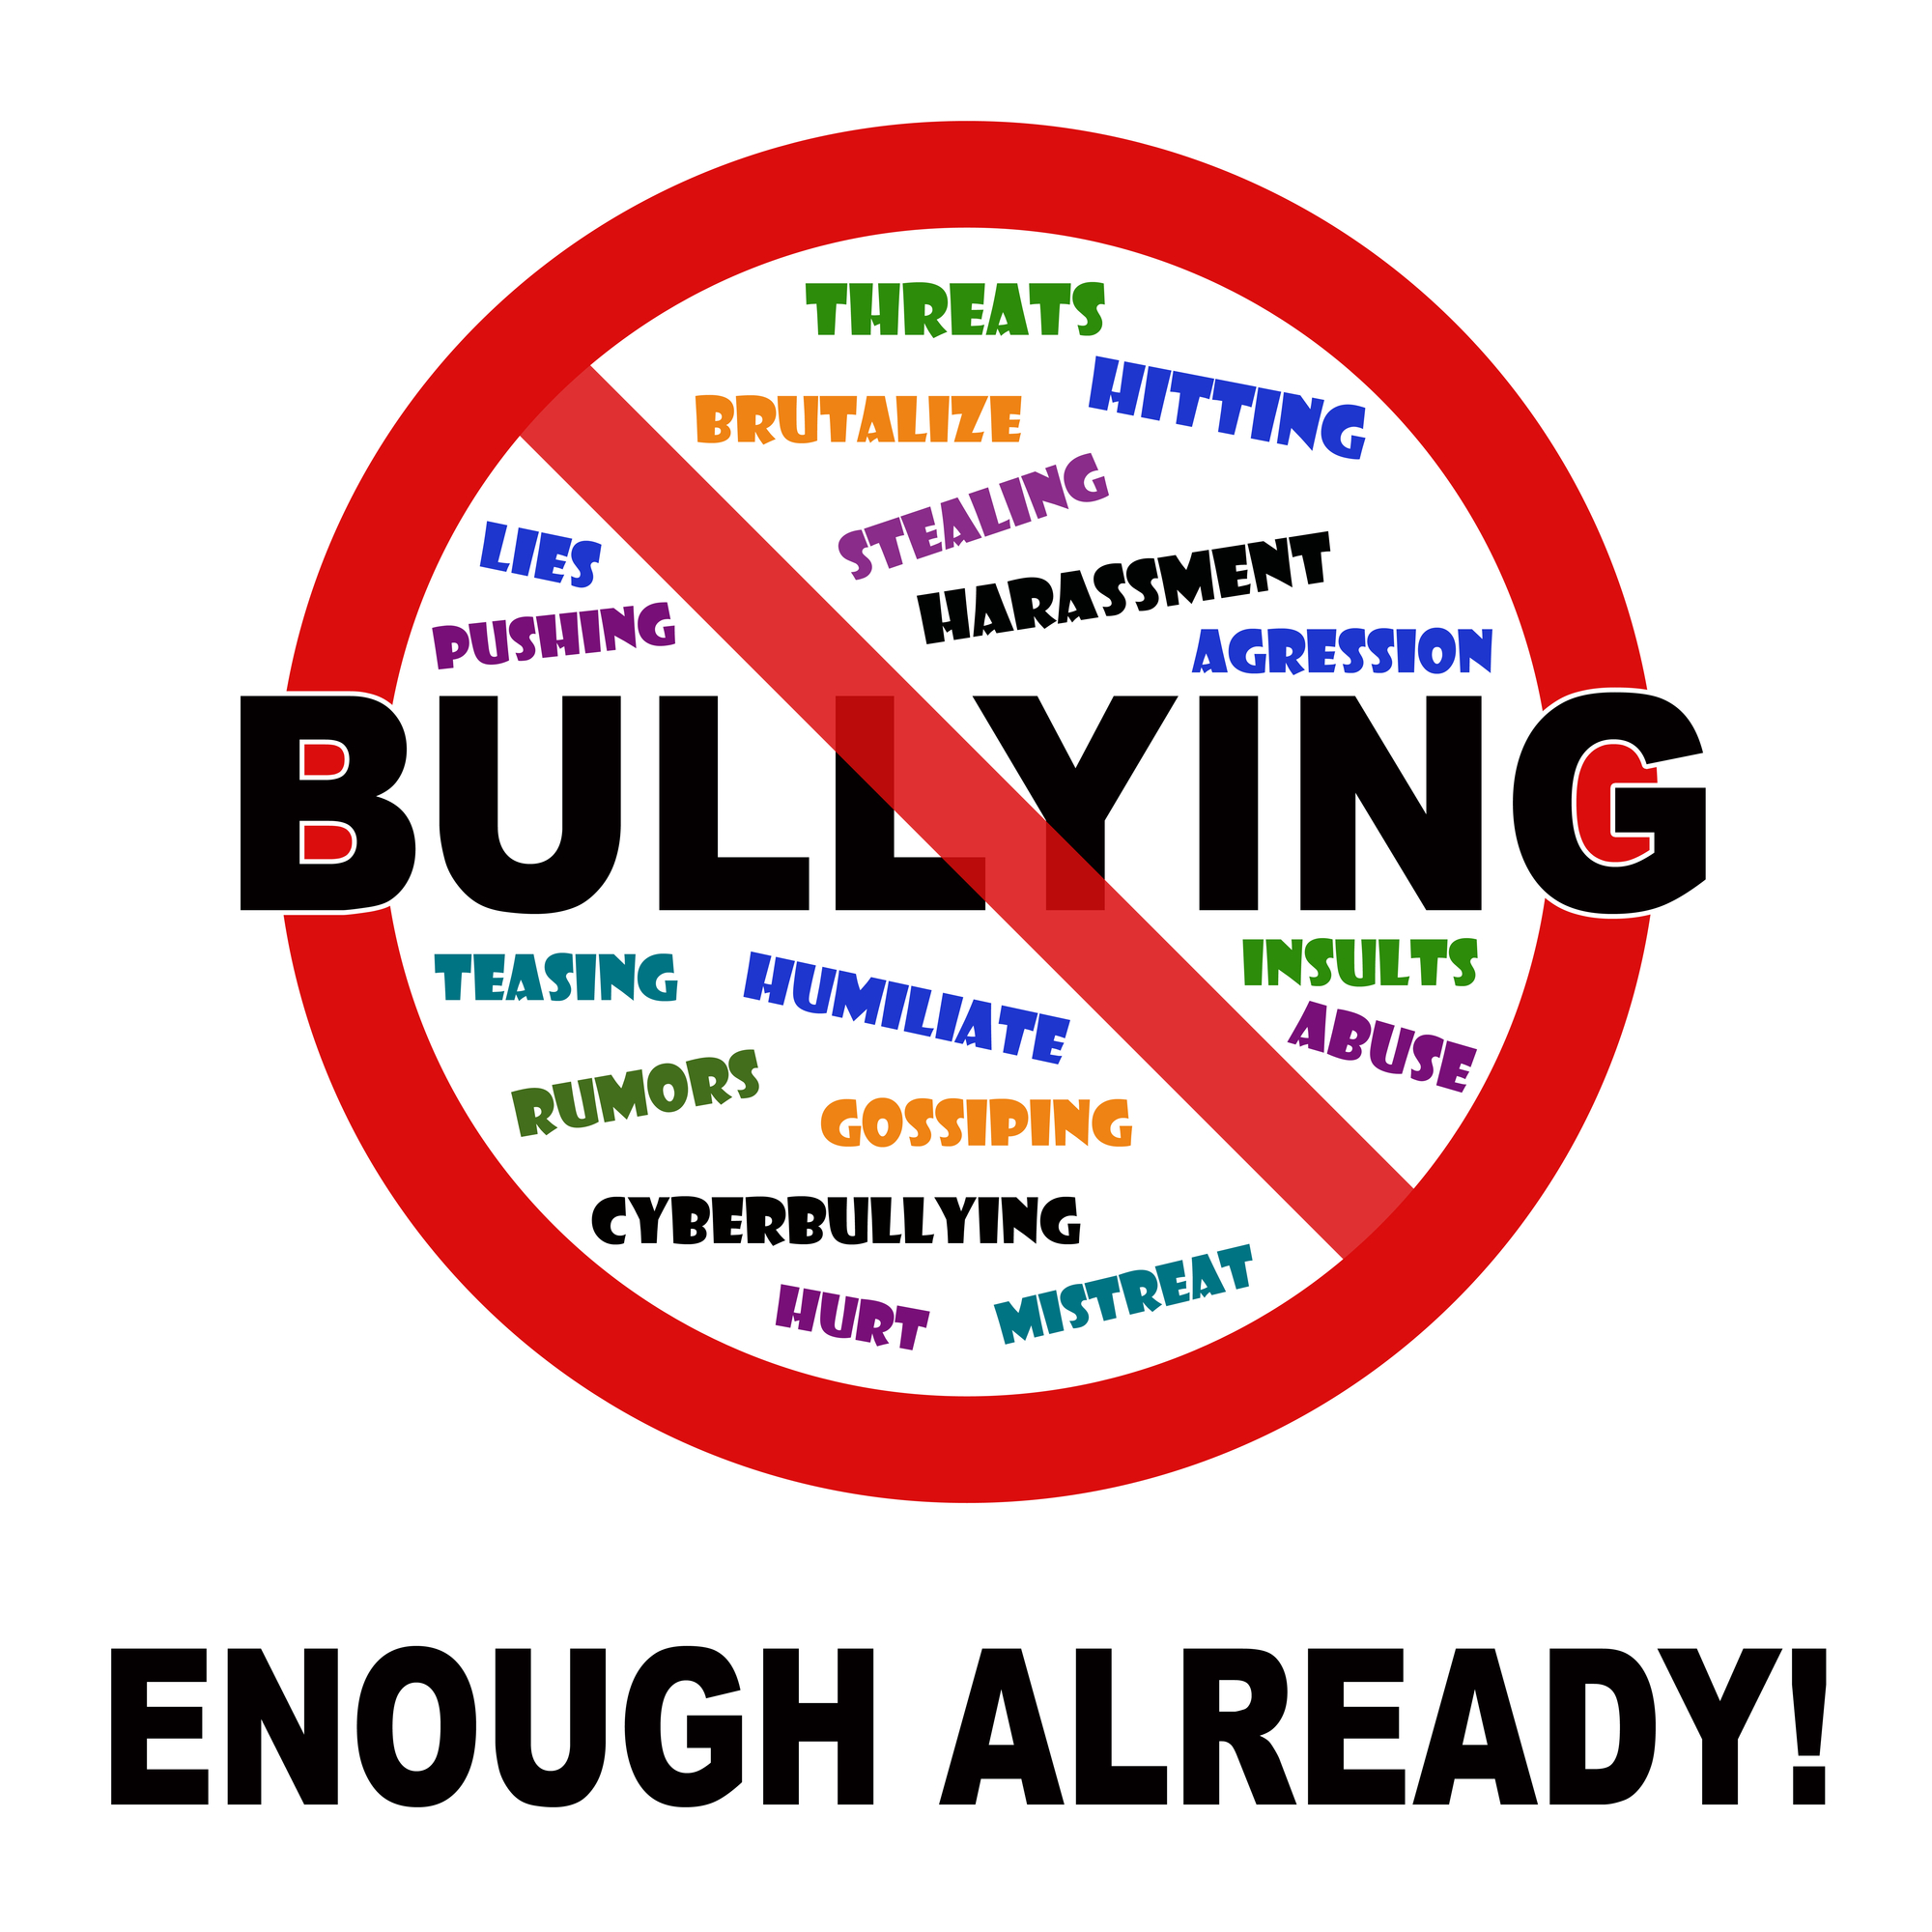 Types of bullying - National Center Against Bullying